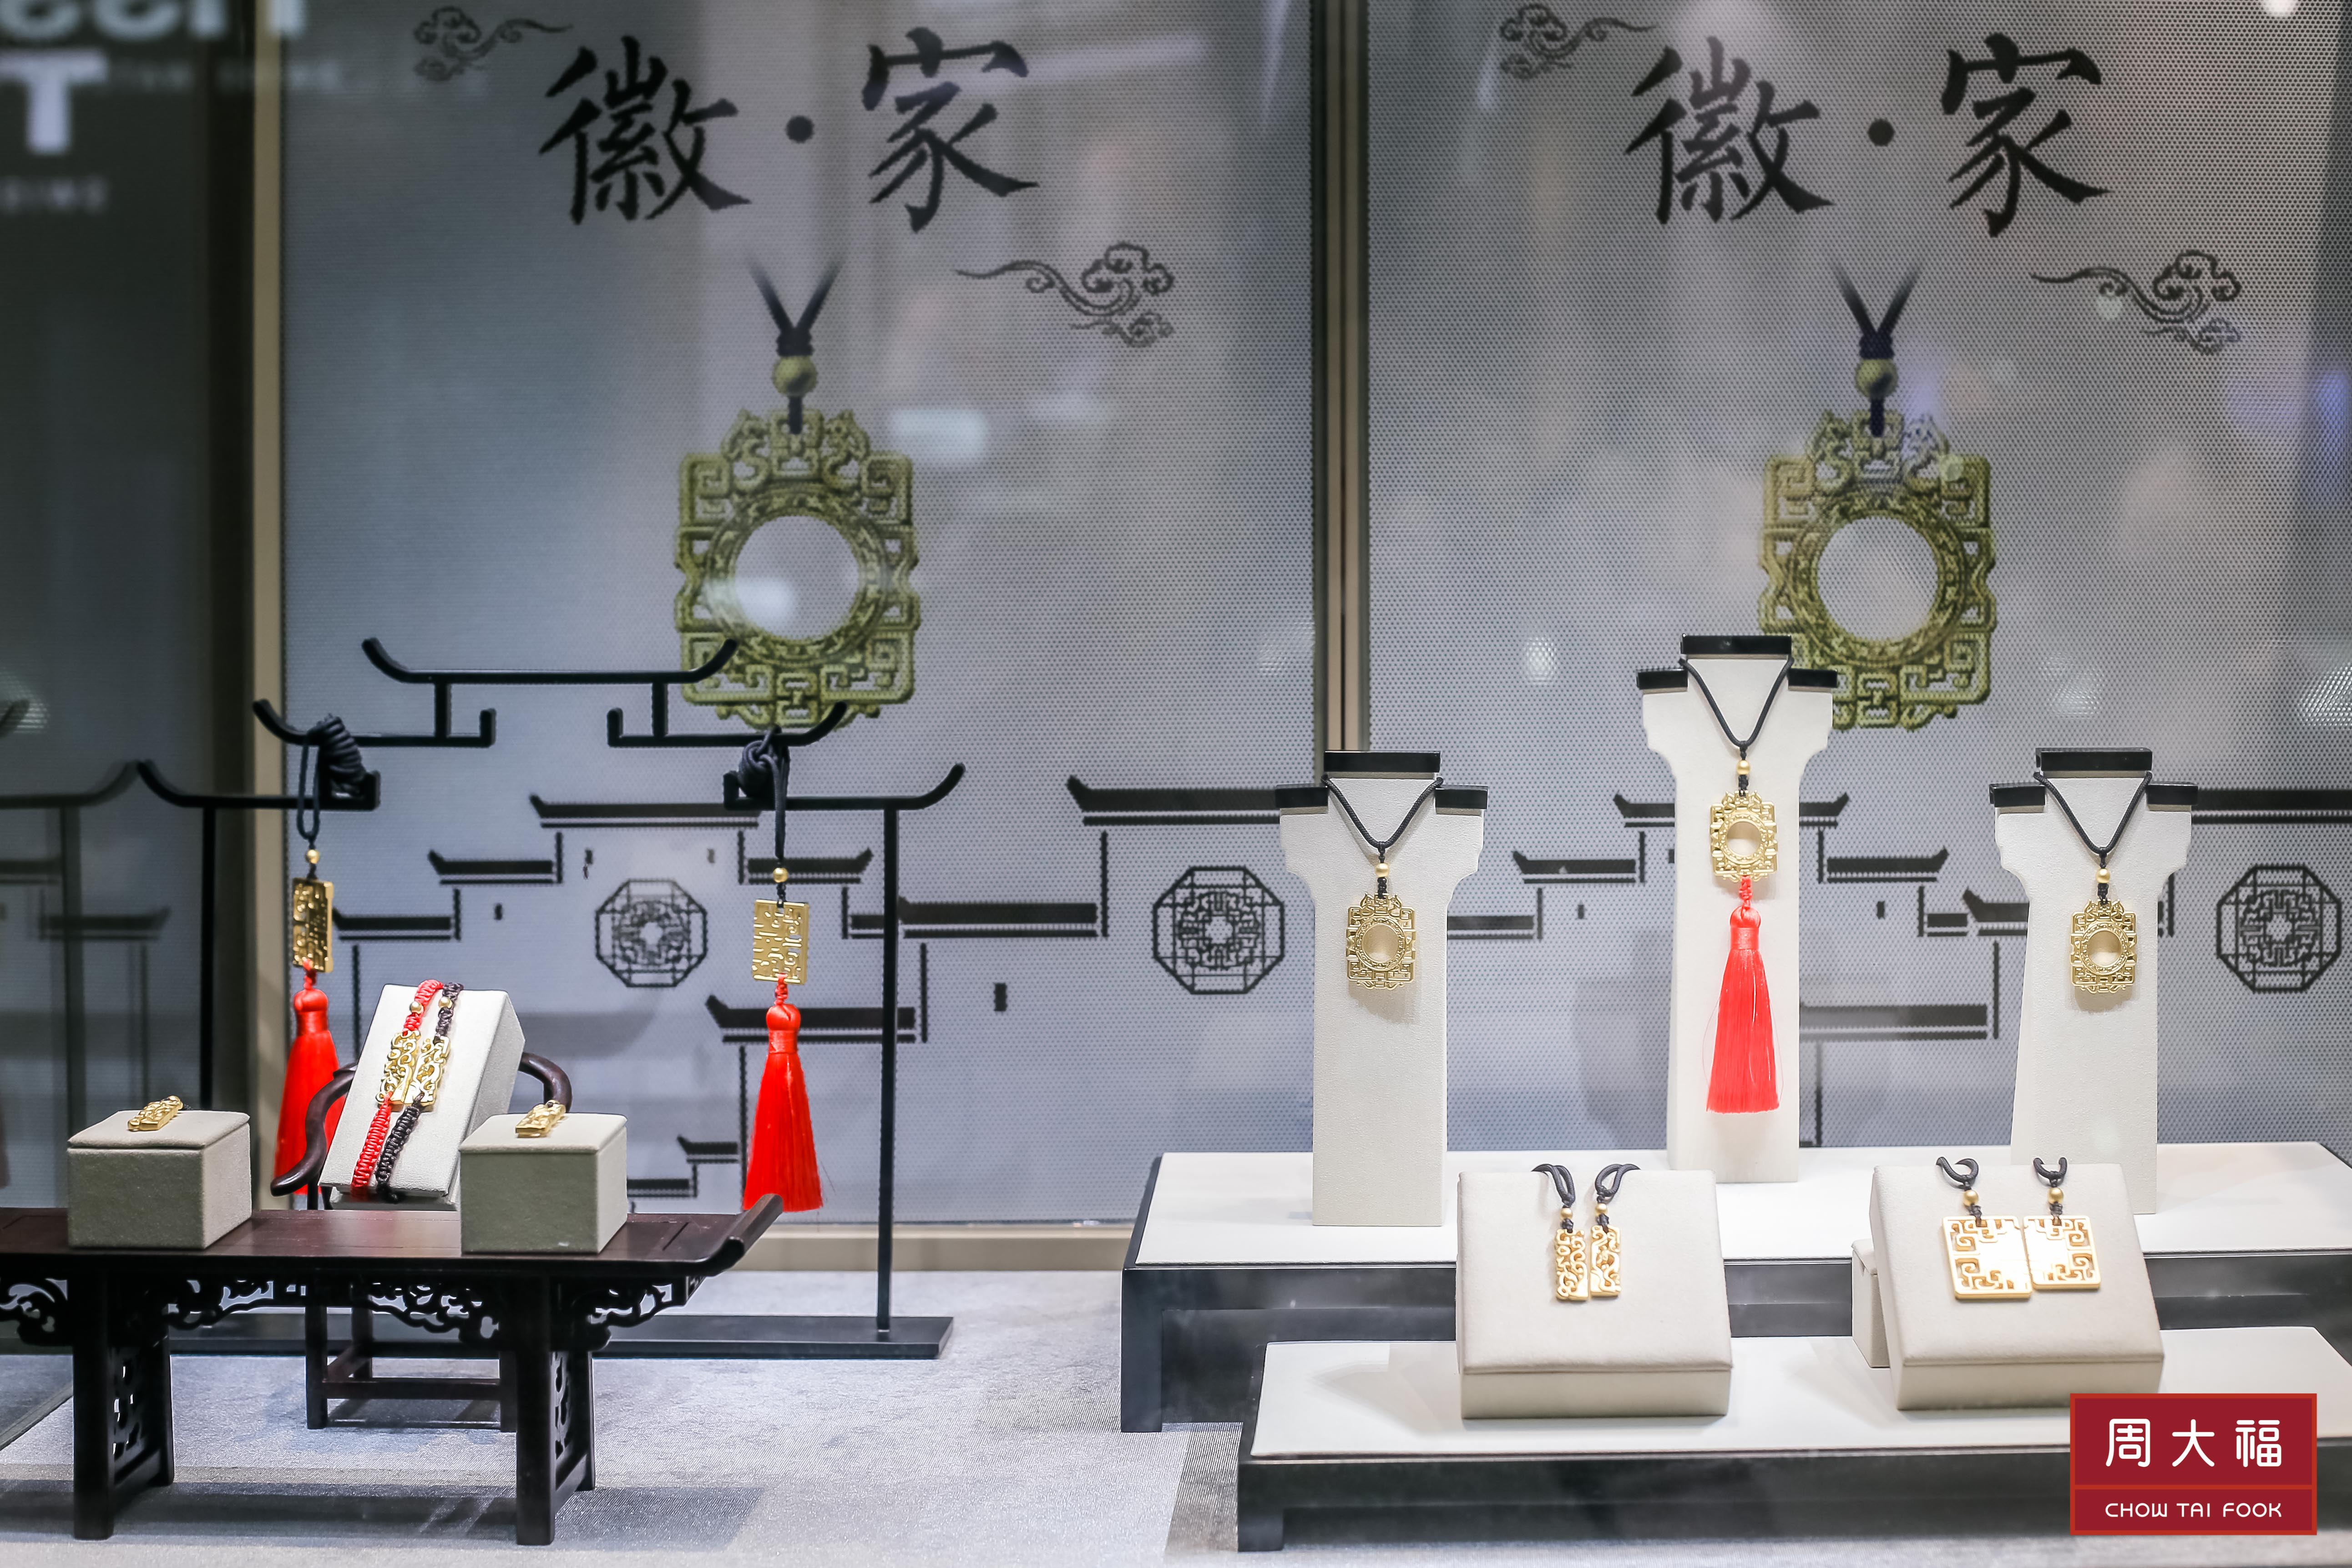 徽文化是中华民族宝贵的文化瑰宝,周大福珠宝集团结合安徽文化元素